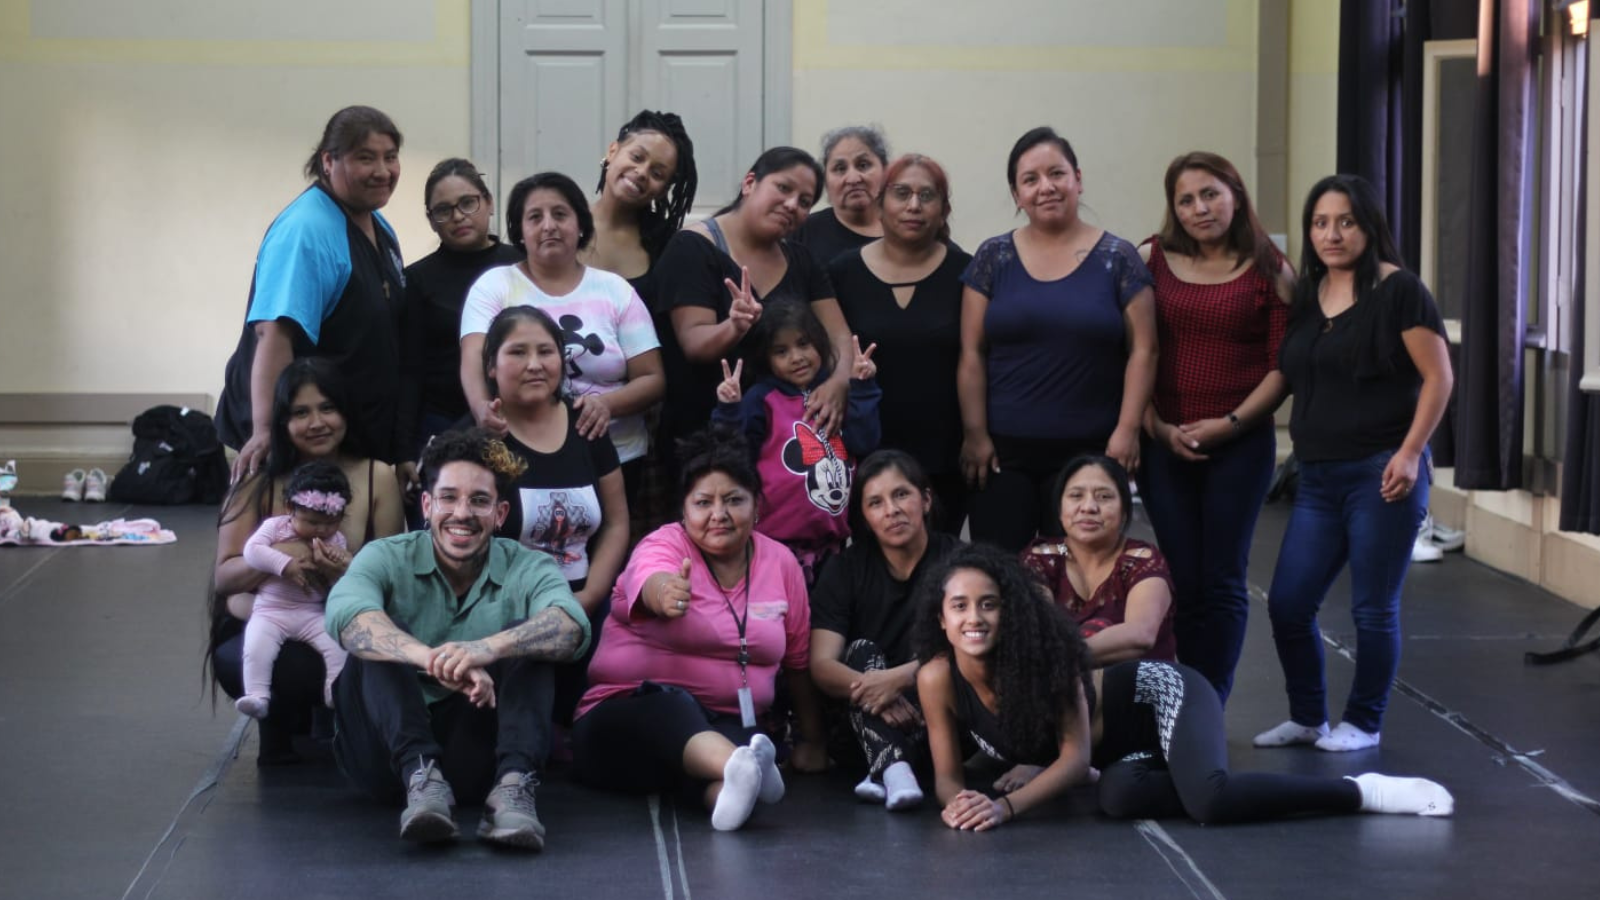 Fotografia colorida dos participantes da oficina com as mulheres da Amilv